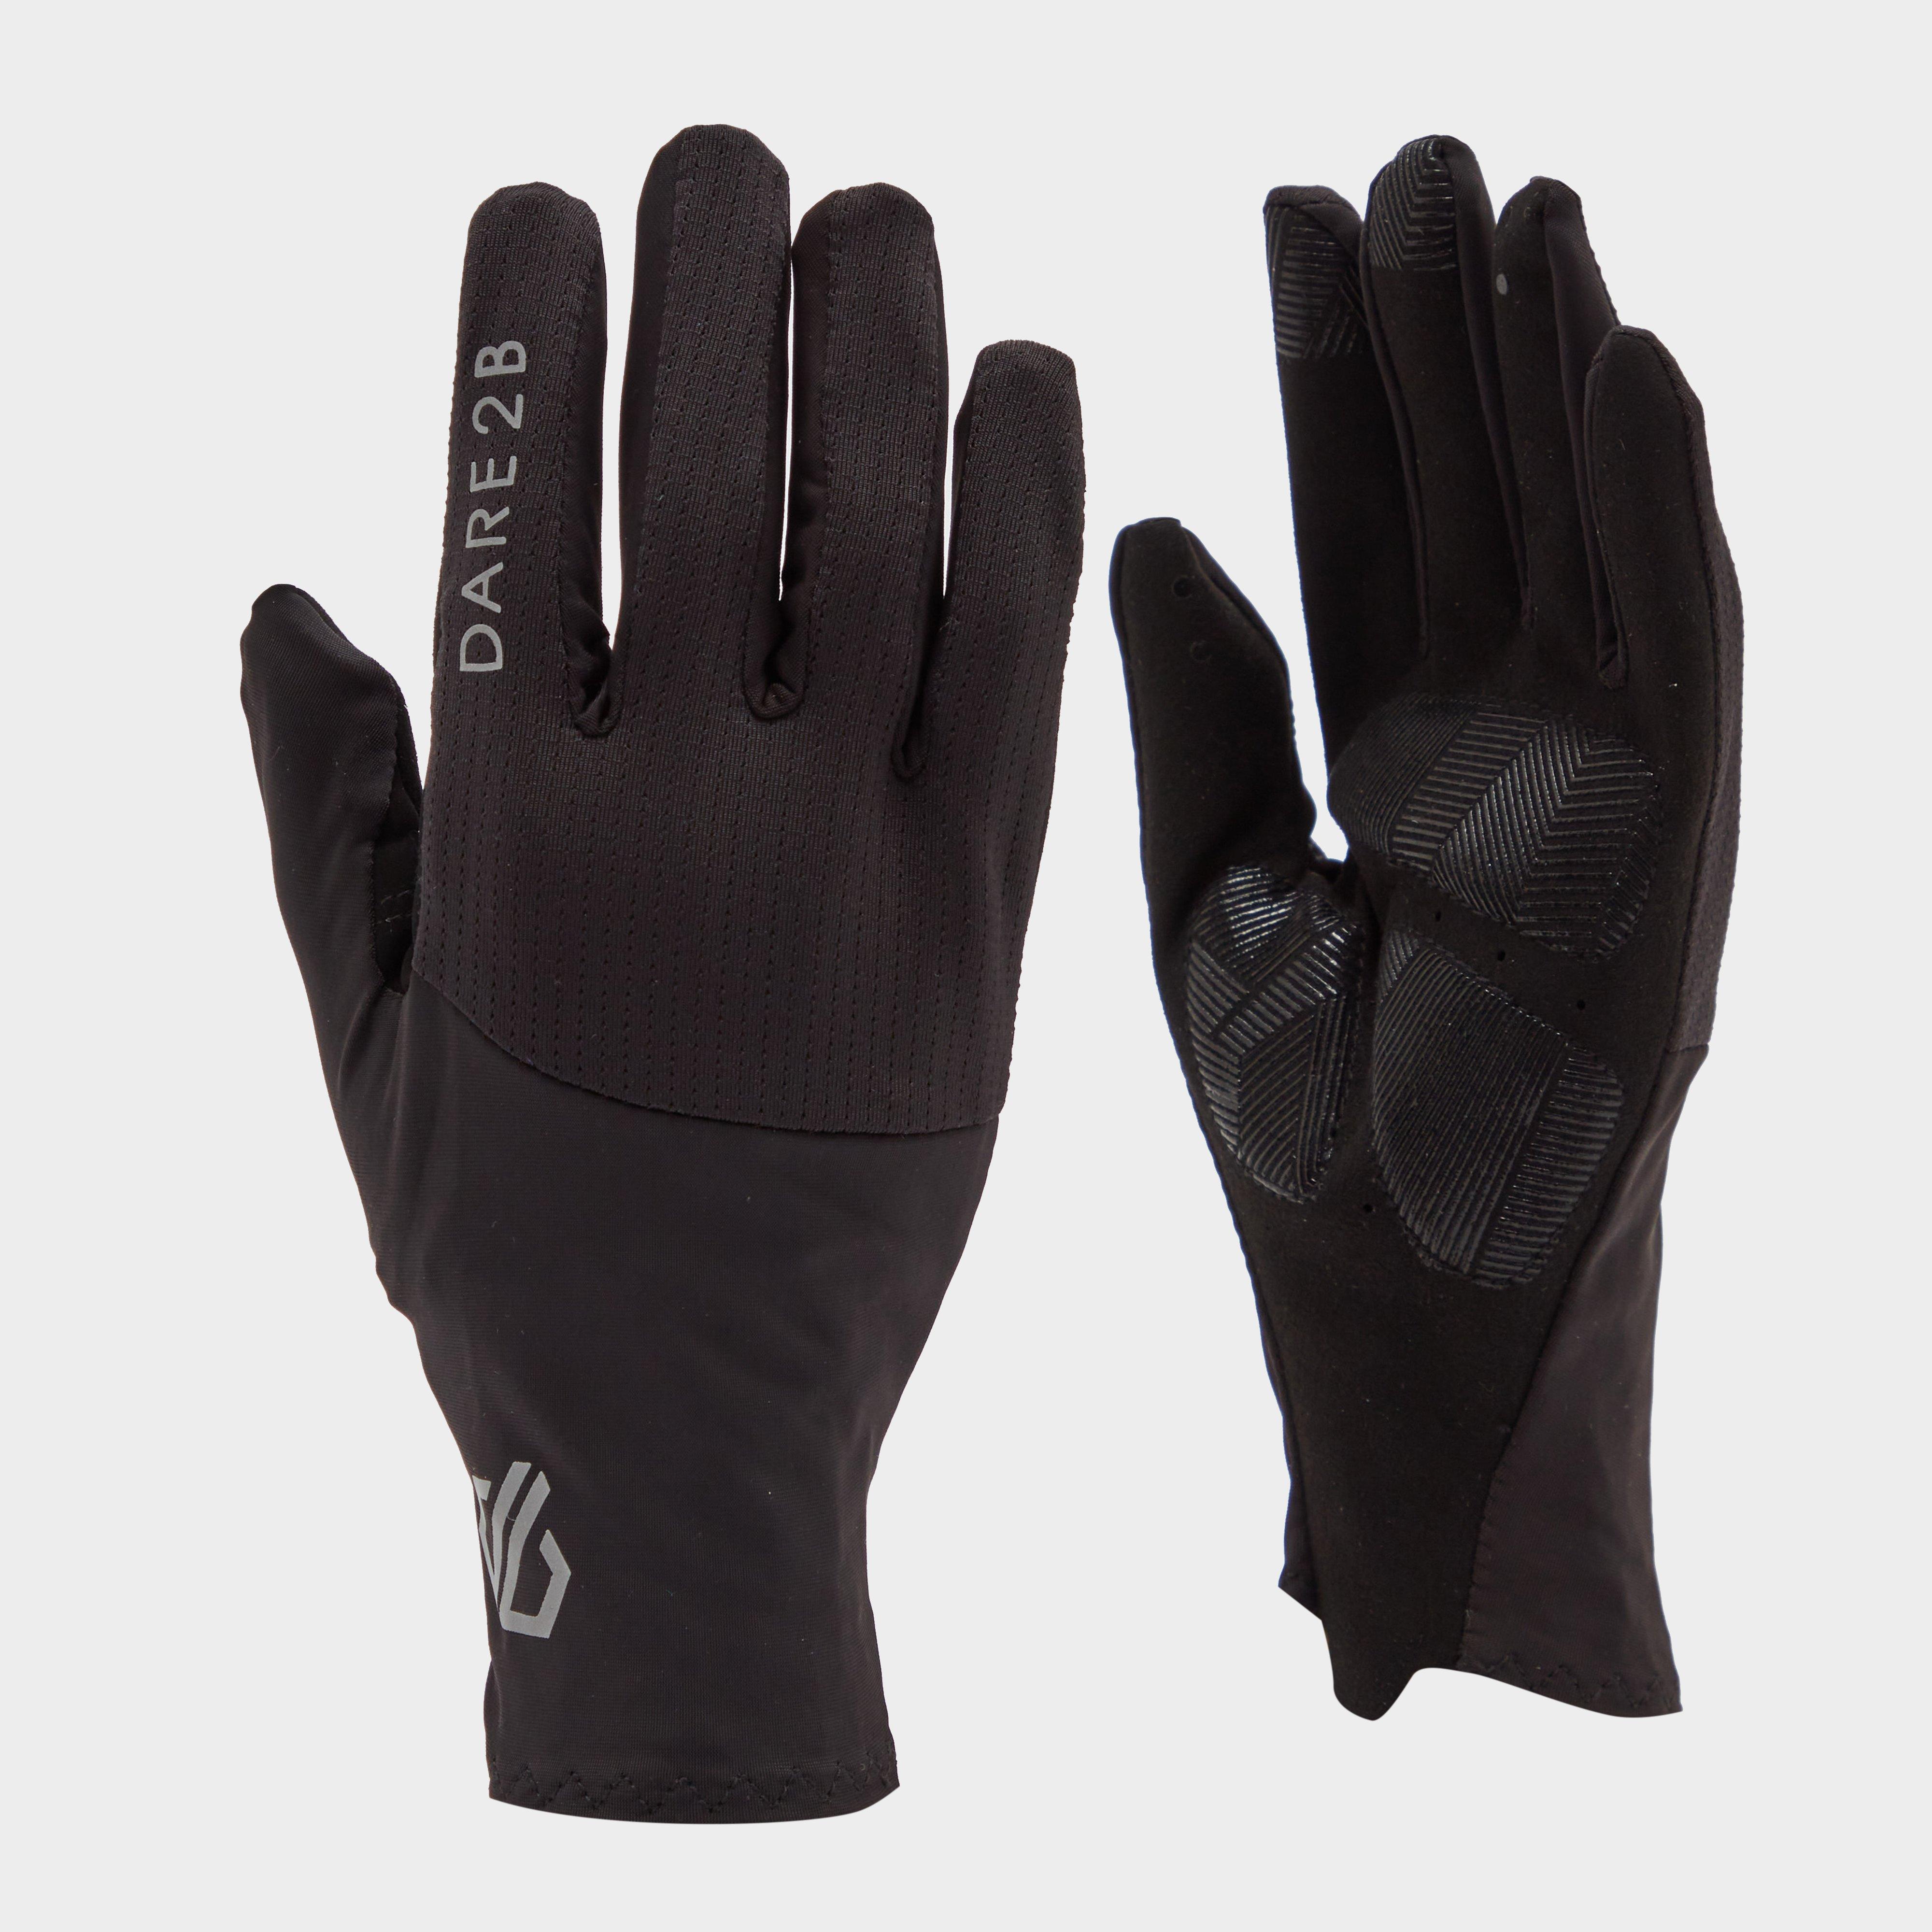 Blacks Dare2b Women's Forcible II Gloves, Black